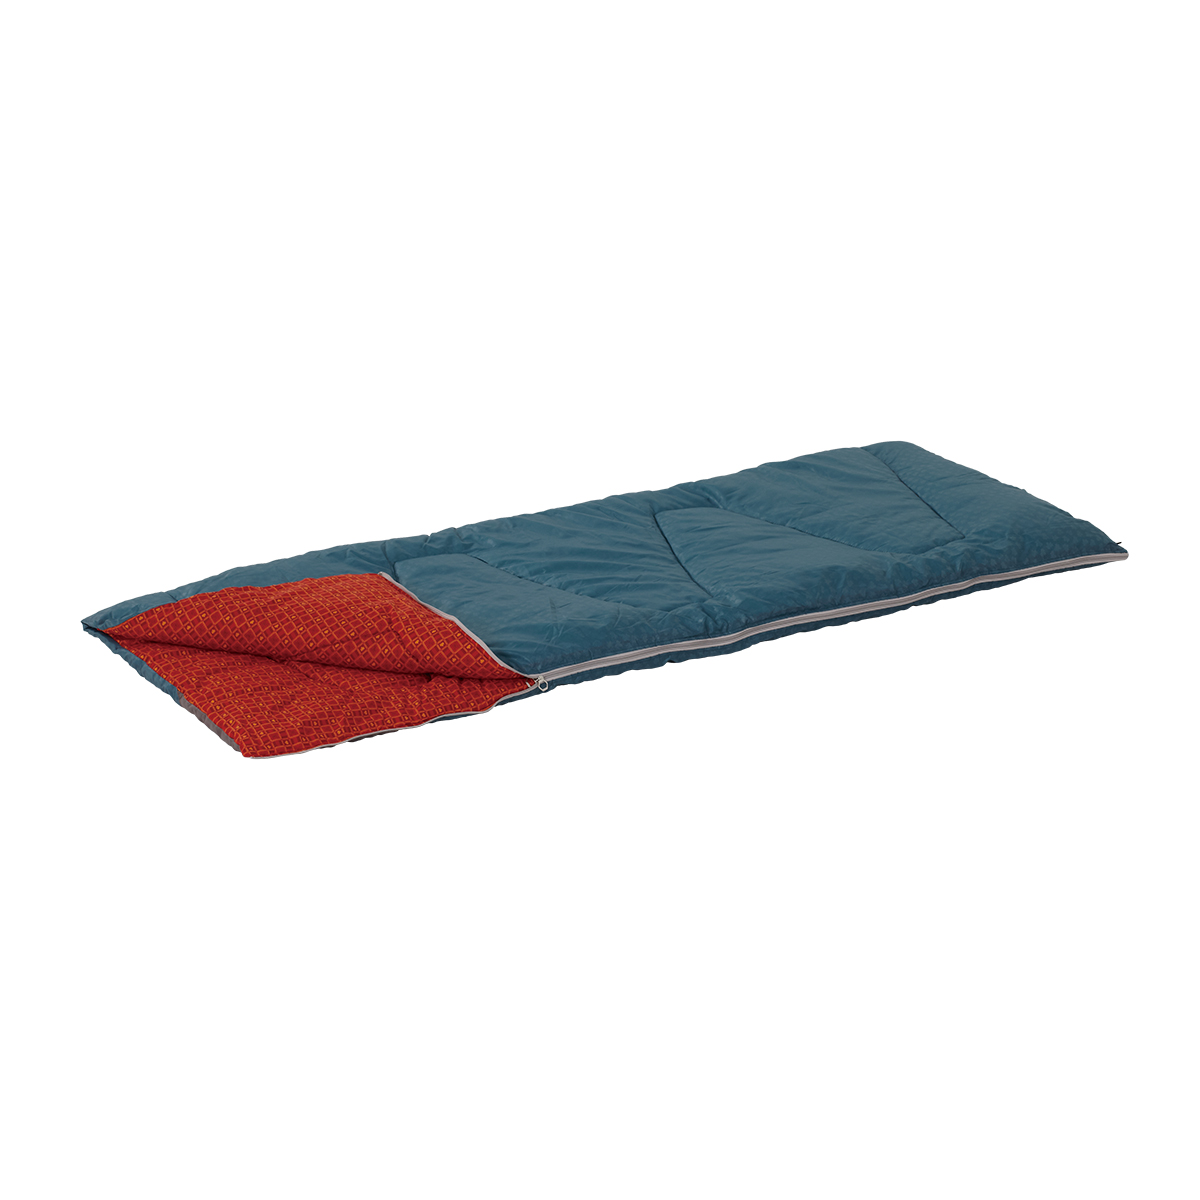 ミニバンぴったり寝袋・-2|ギア|寝具|シュラフ|製品情報|ロゴス 